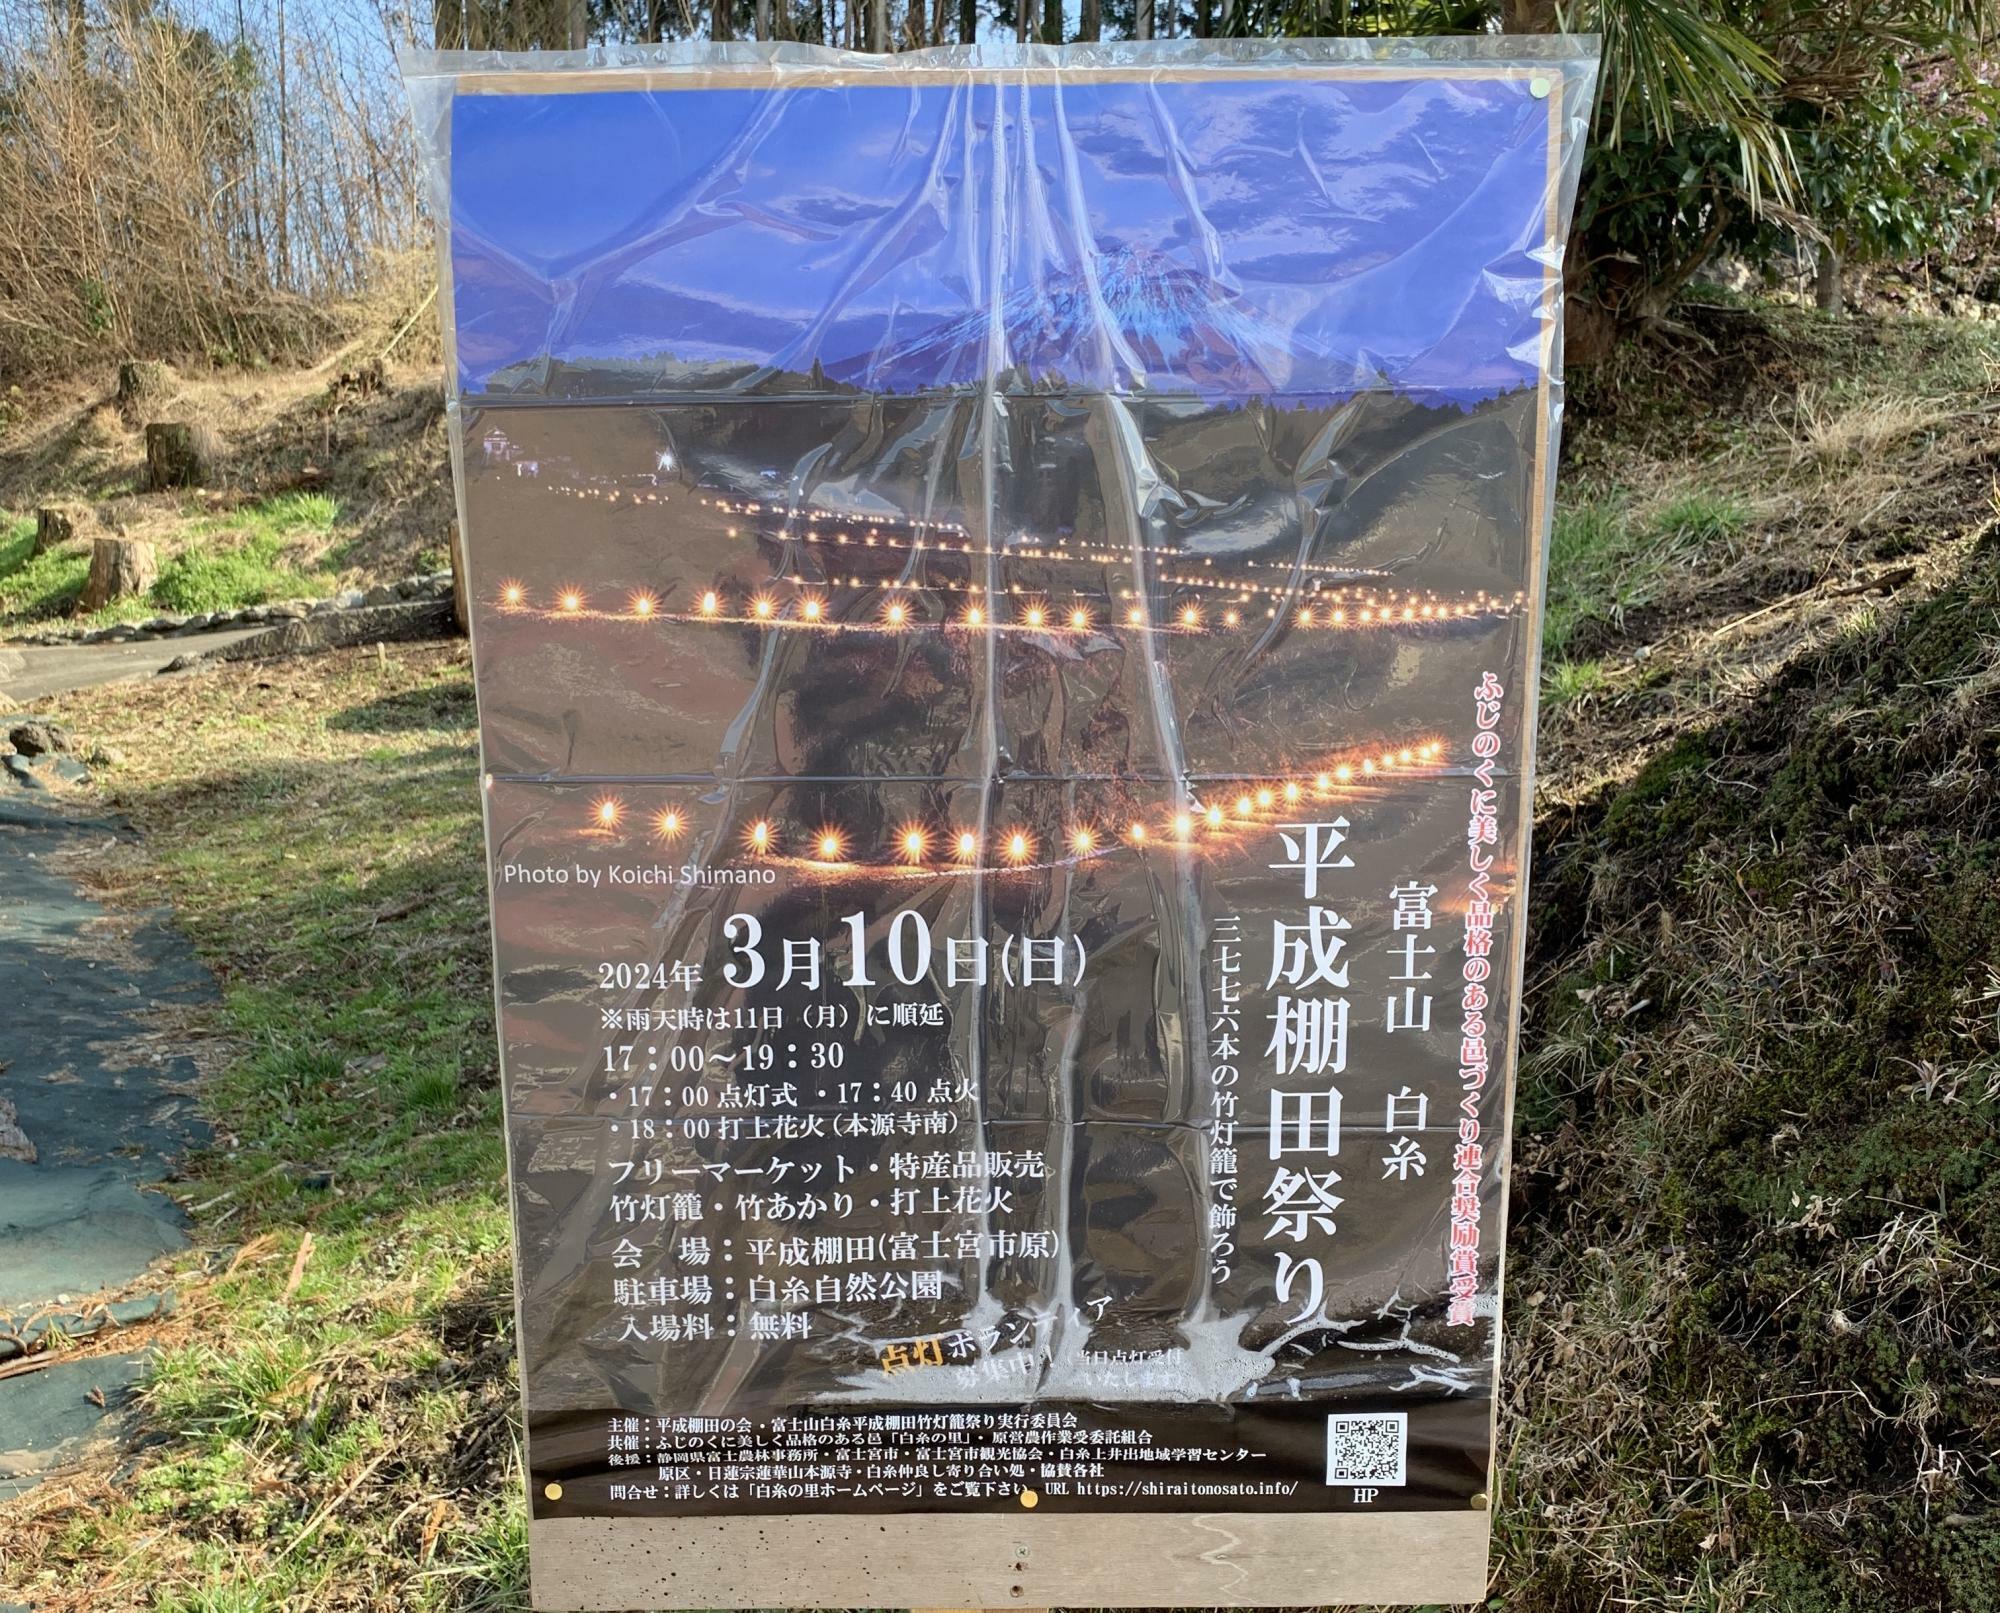 3月10日は第6回 富士山白糸平成棚田祭りが開催